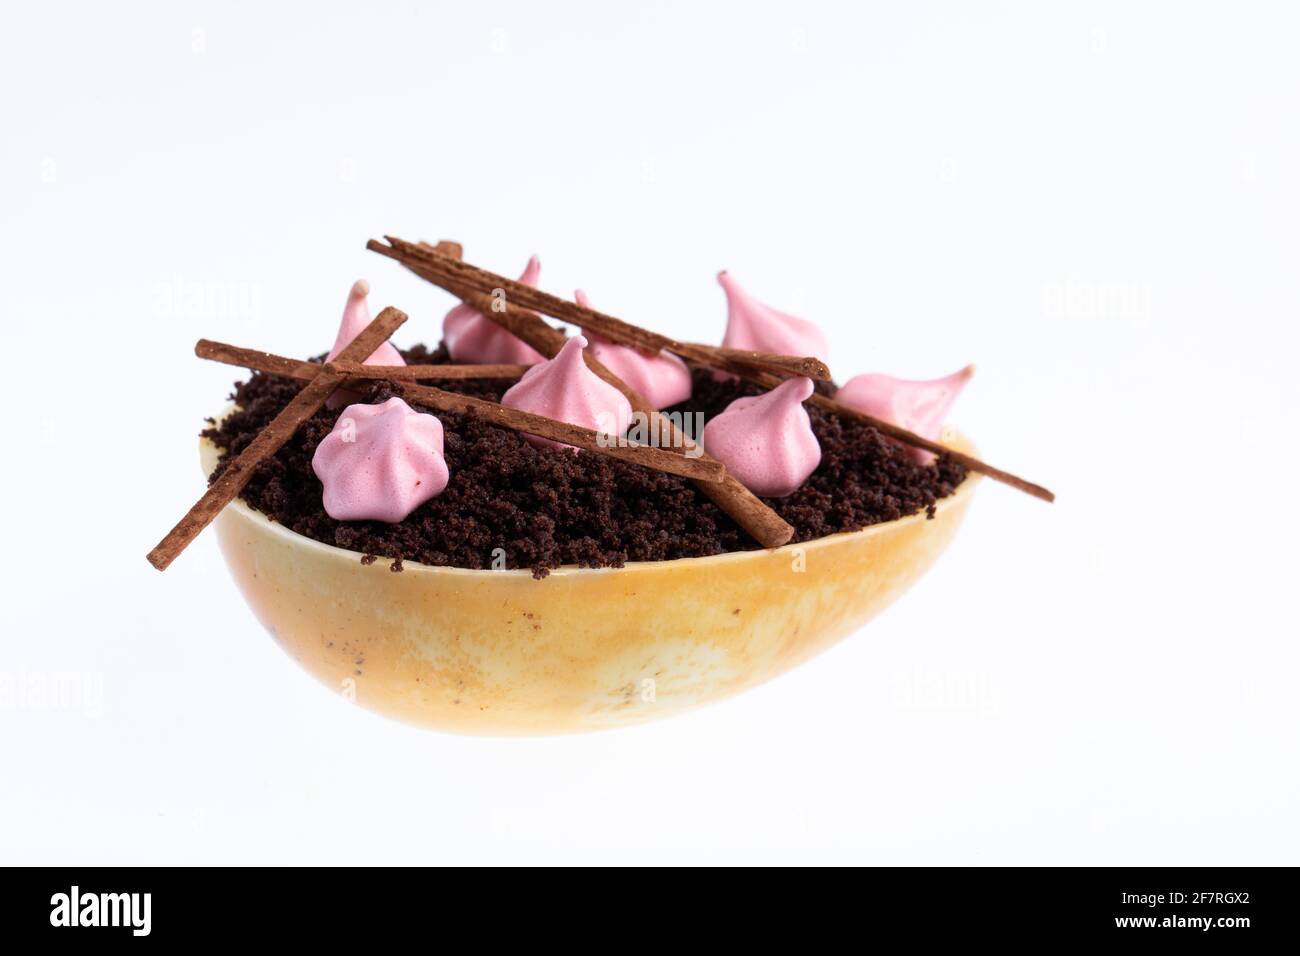 Huevo de chocolate blanco relleno con mousse de fruta de la pasión decorada con galletas de merengue rosas y migas de pan Foto de stock